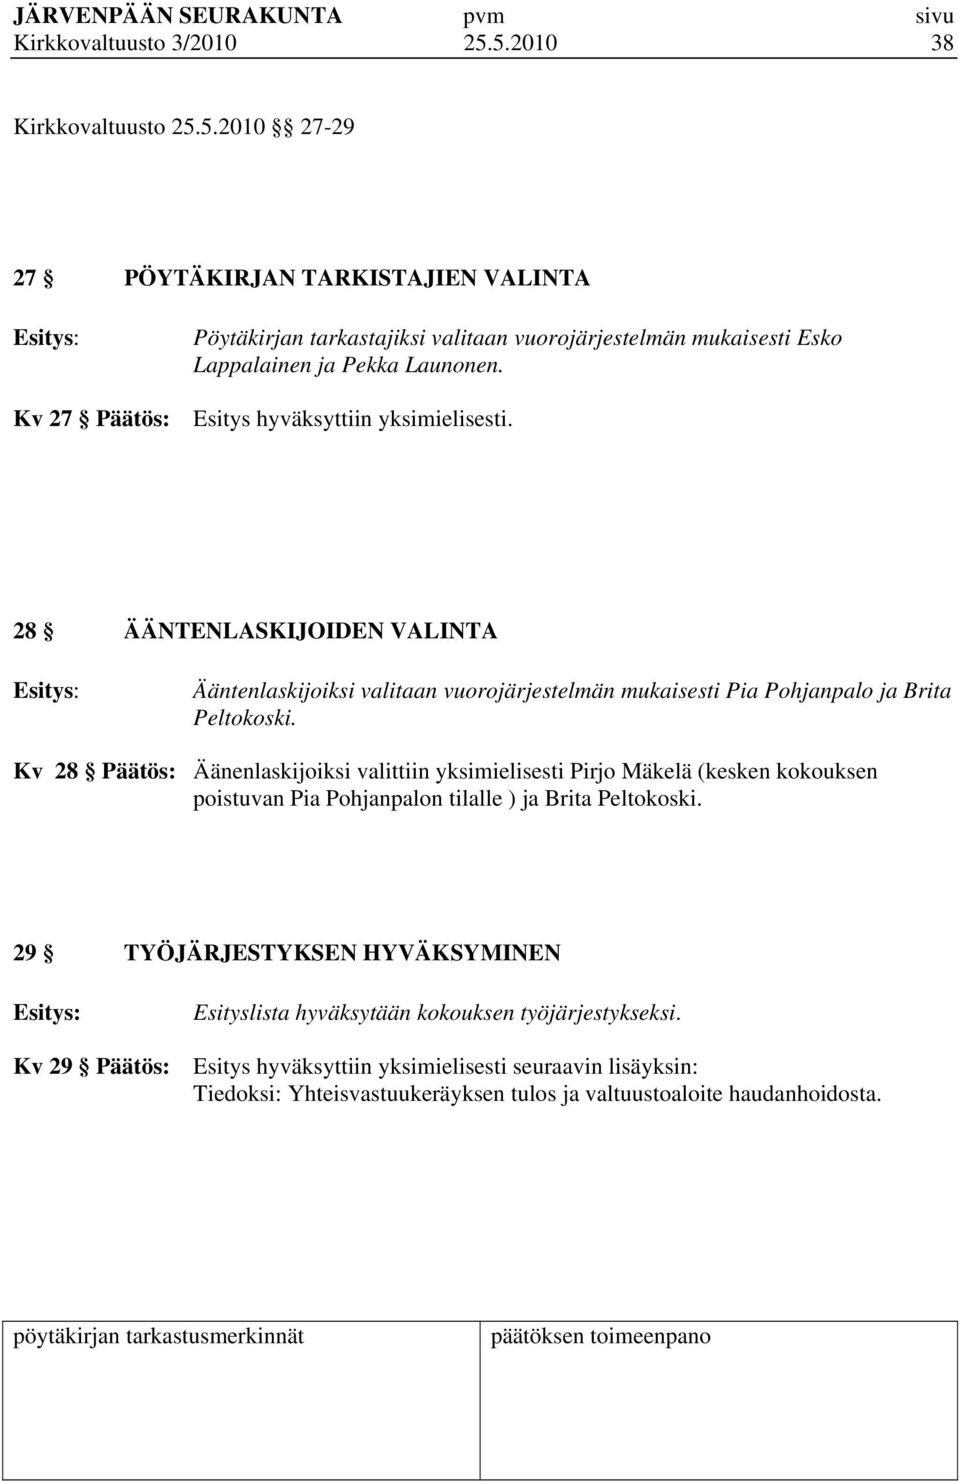 Kv 28 Päätös: Äänenlaskijoiksi valittiin yksimielisesti Pirjo Mäkelä (kesken kokouksen poistuvan Pia Pohjanpalon tilalle ) ja Brita Peltokoski.